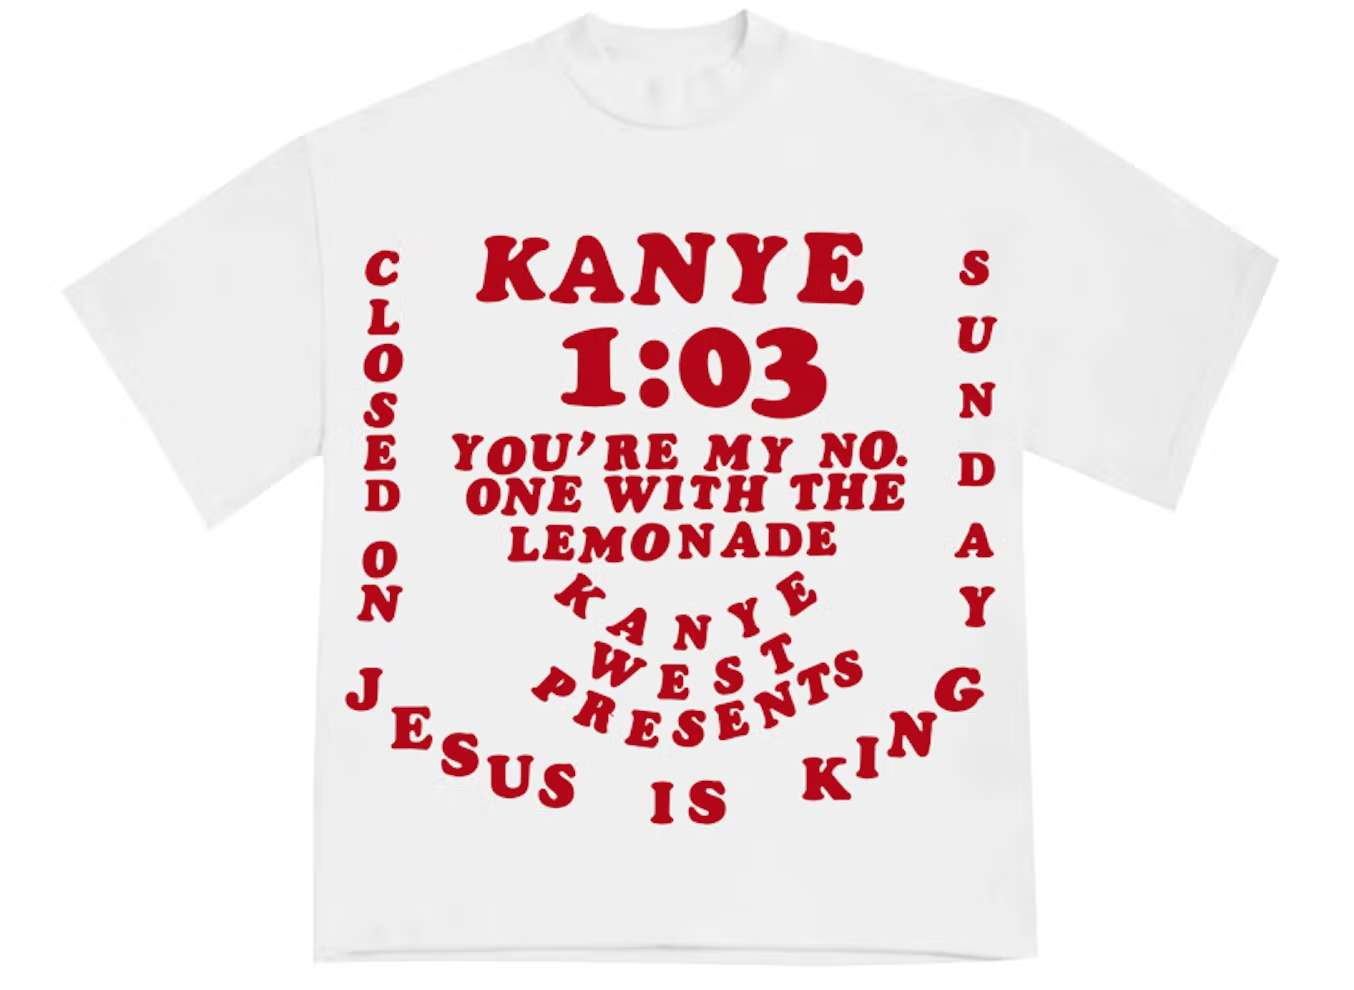 Kanye West CPFM for JIK III Shirts - White